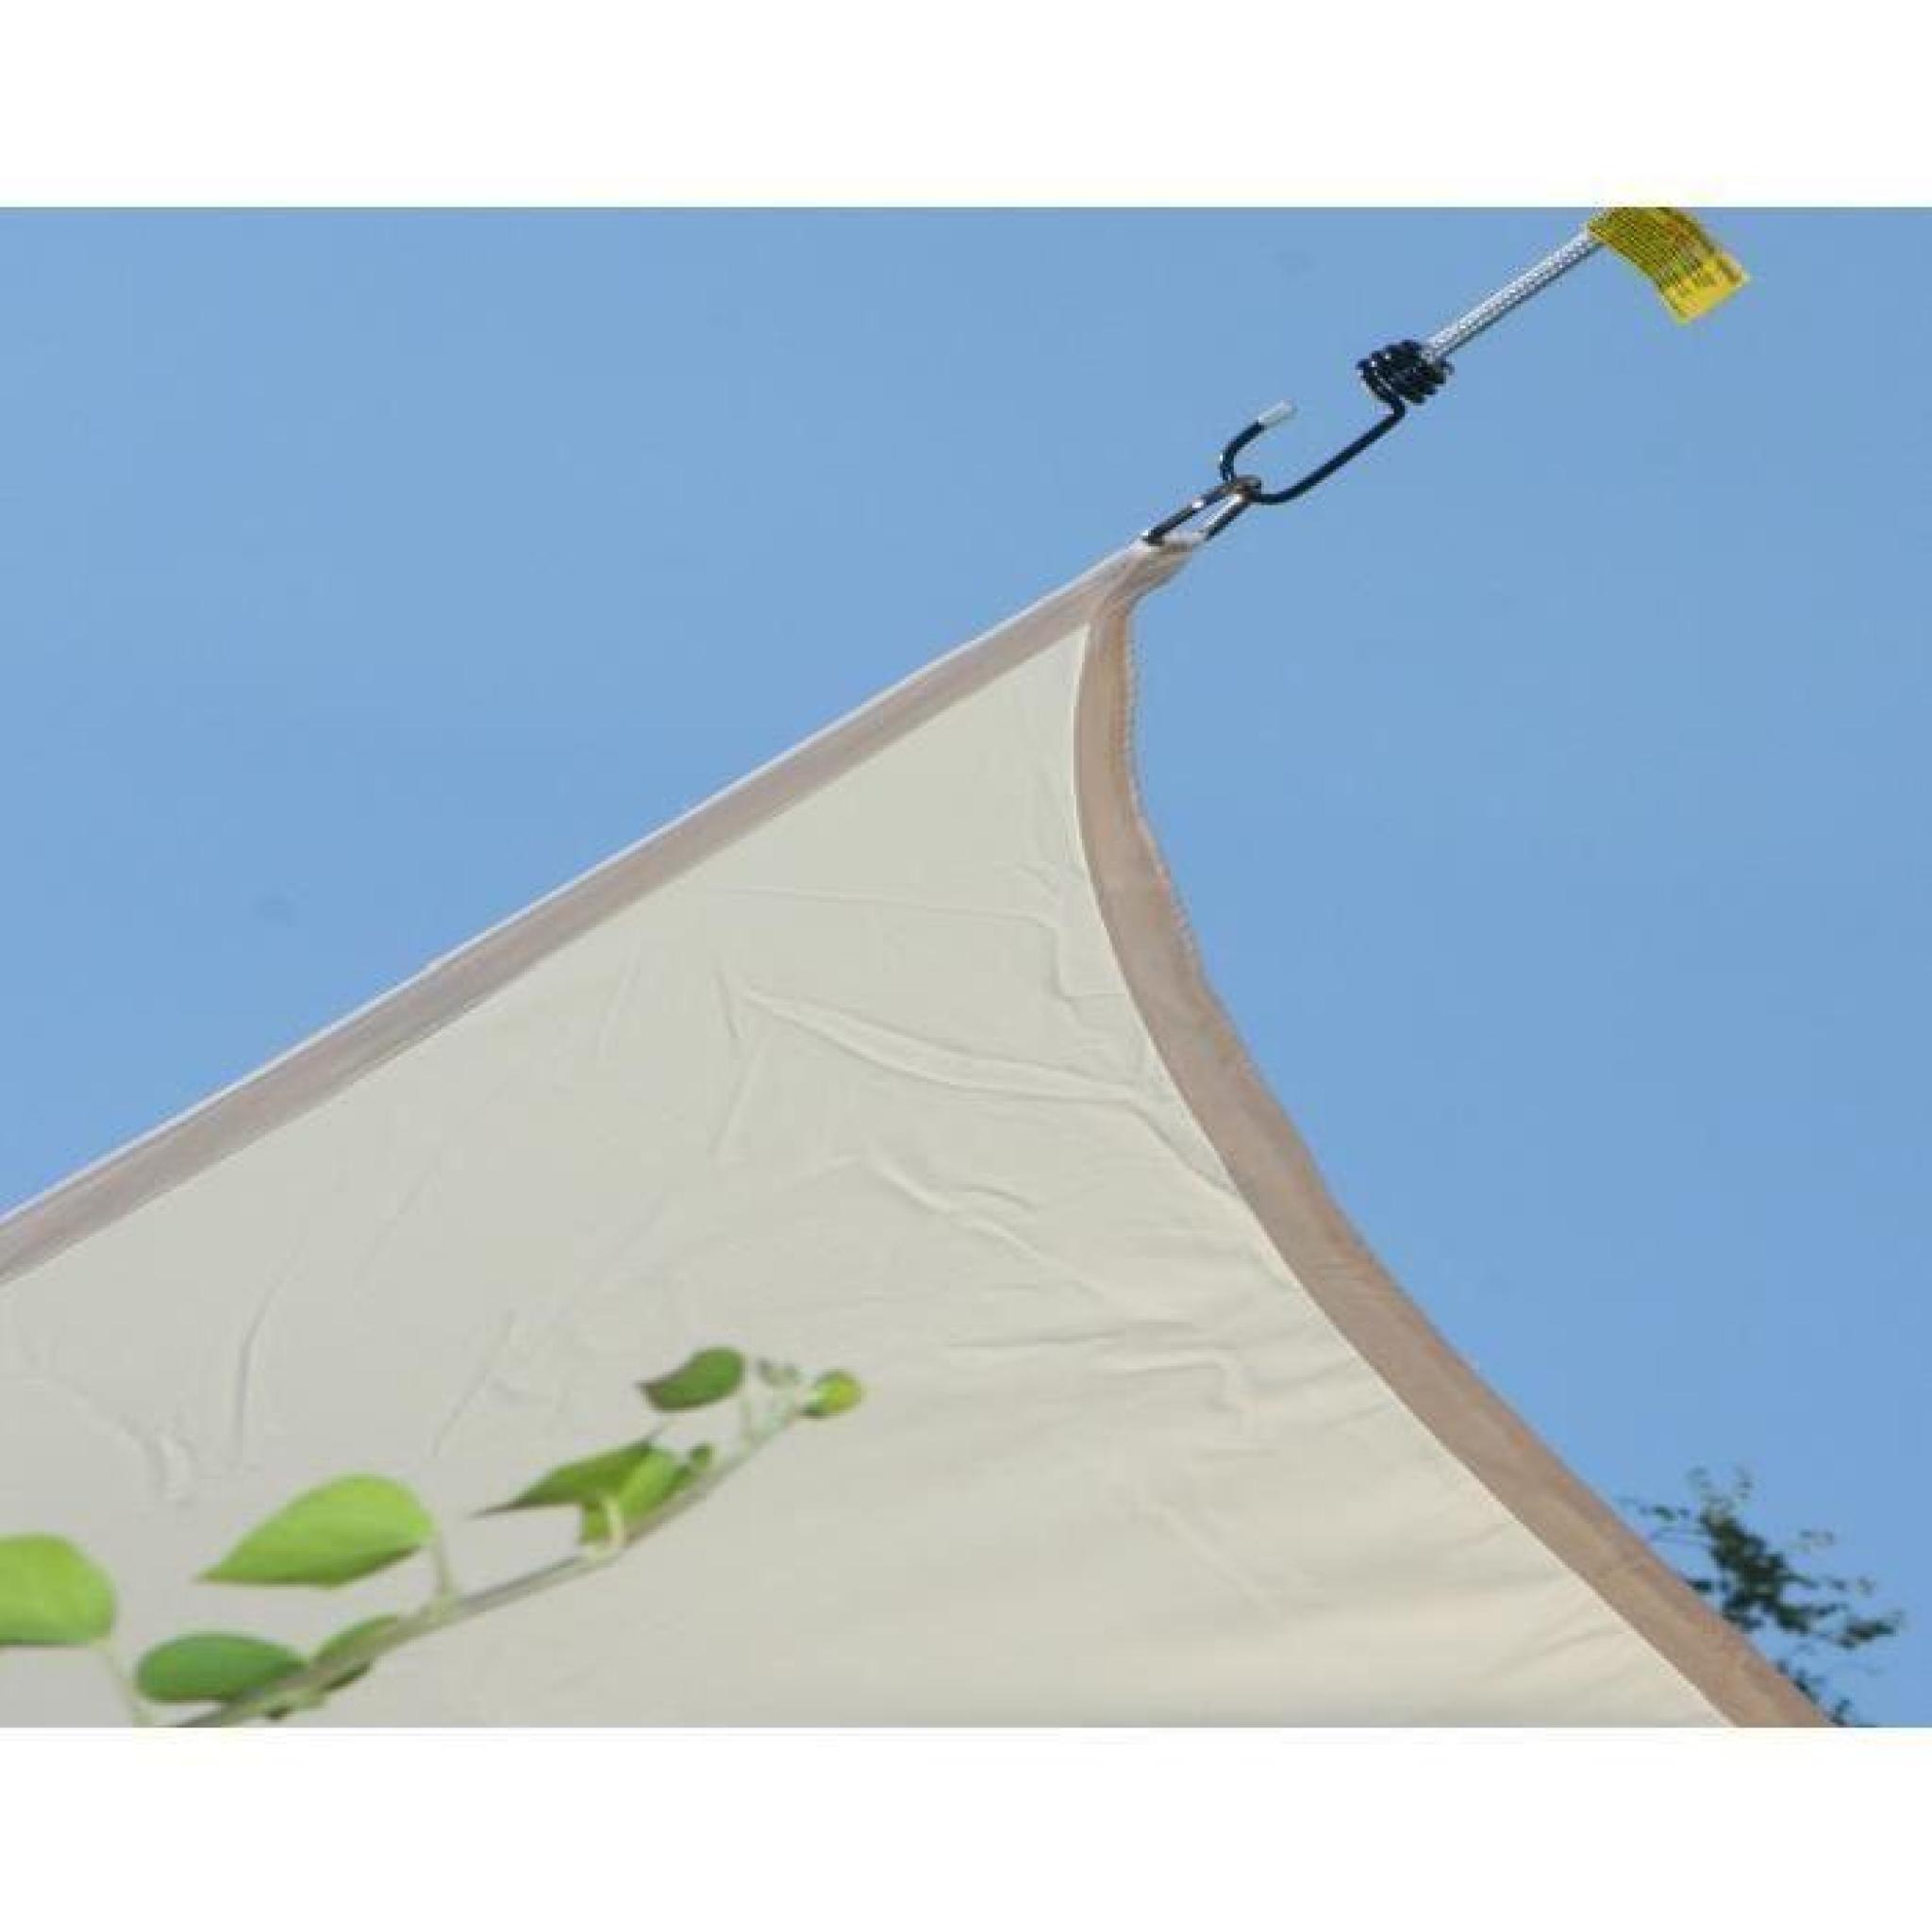 Voile d'ombrage rectangulaire Vert Anis en Polyester 200g-m² anti-UV, 420 x 300 cm avec kit de fixation pas cher